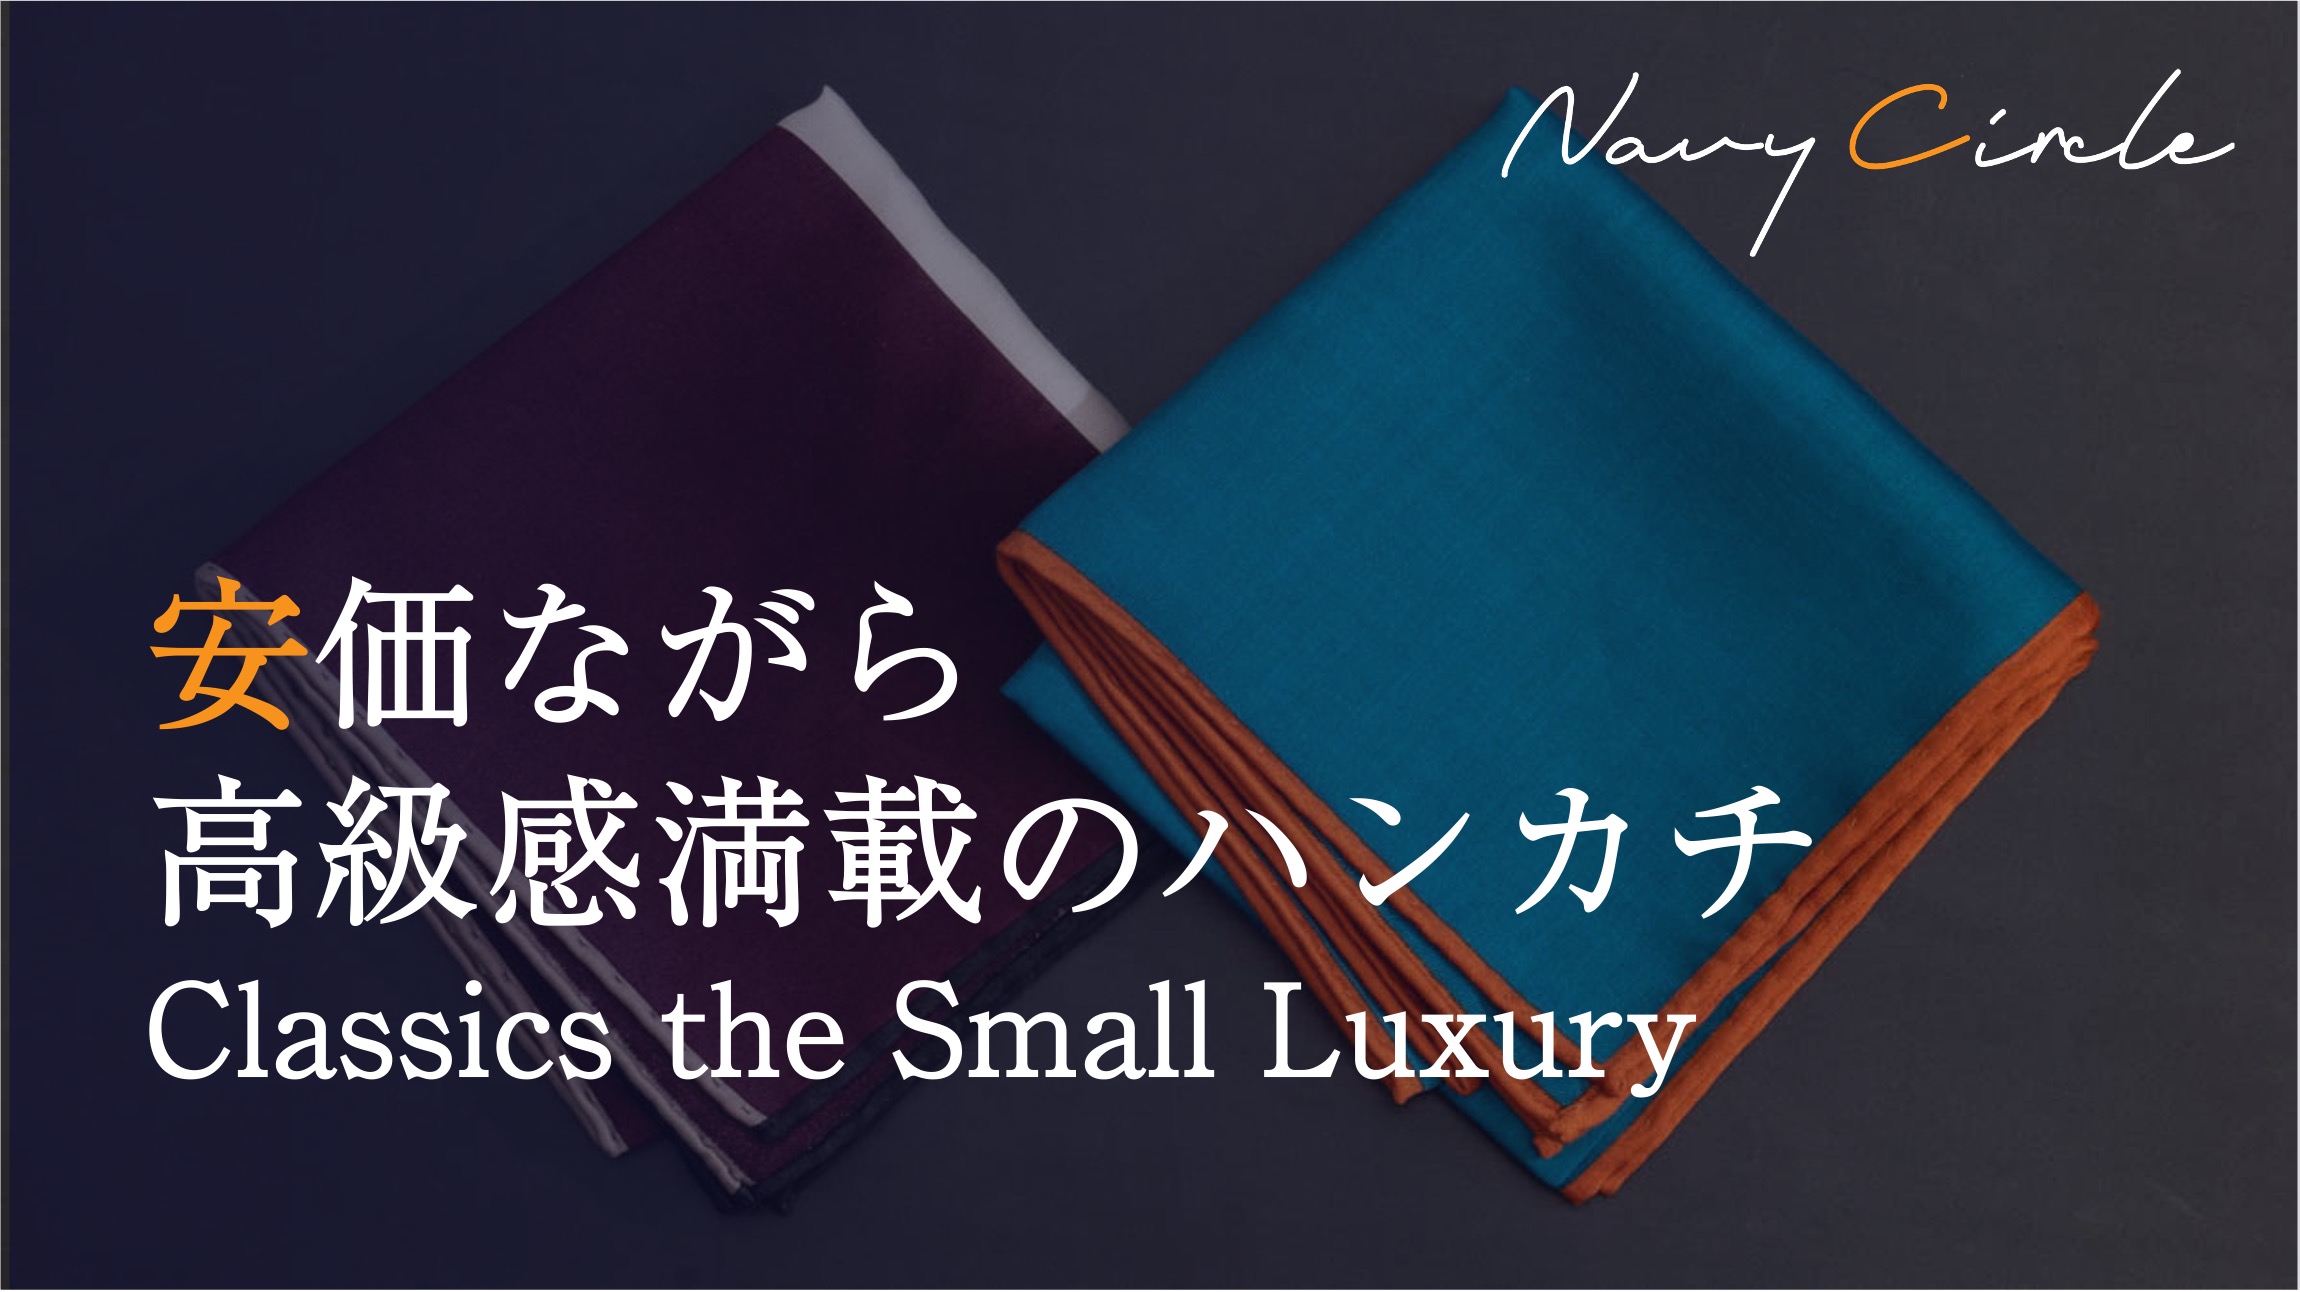 安価ながら高級感満載のハンカチ。Classics the Small Luxury | Handkerchieves by Classics the Small Luxury